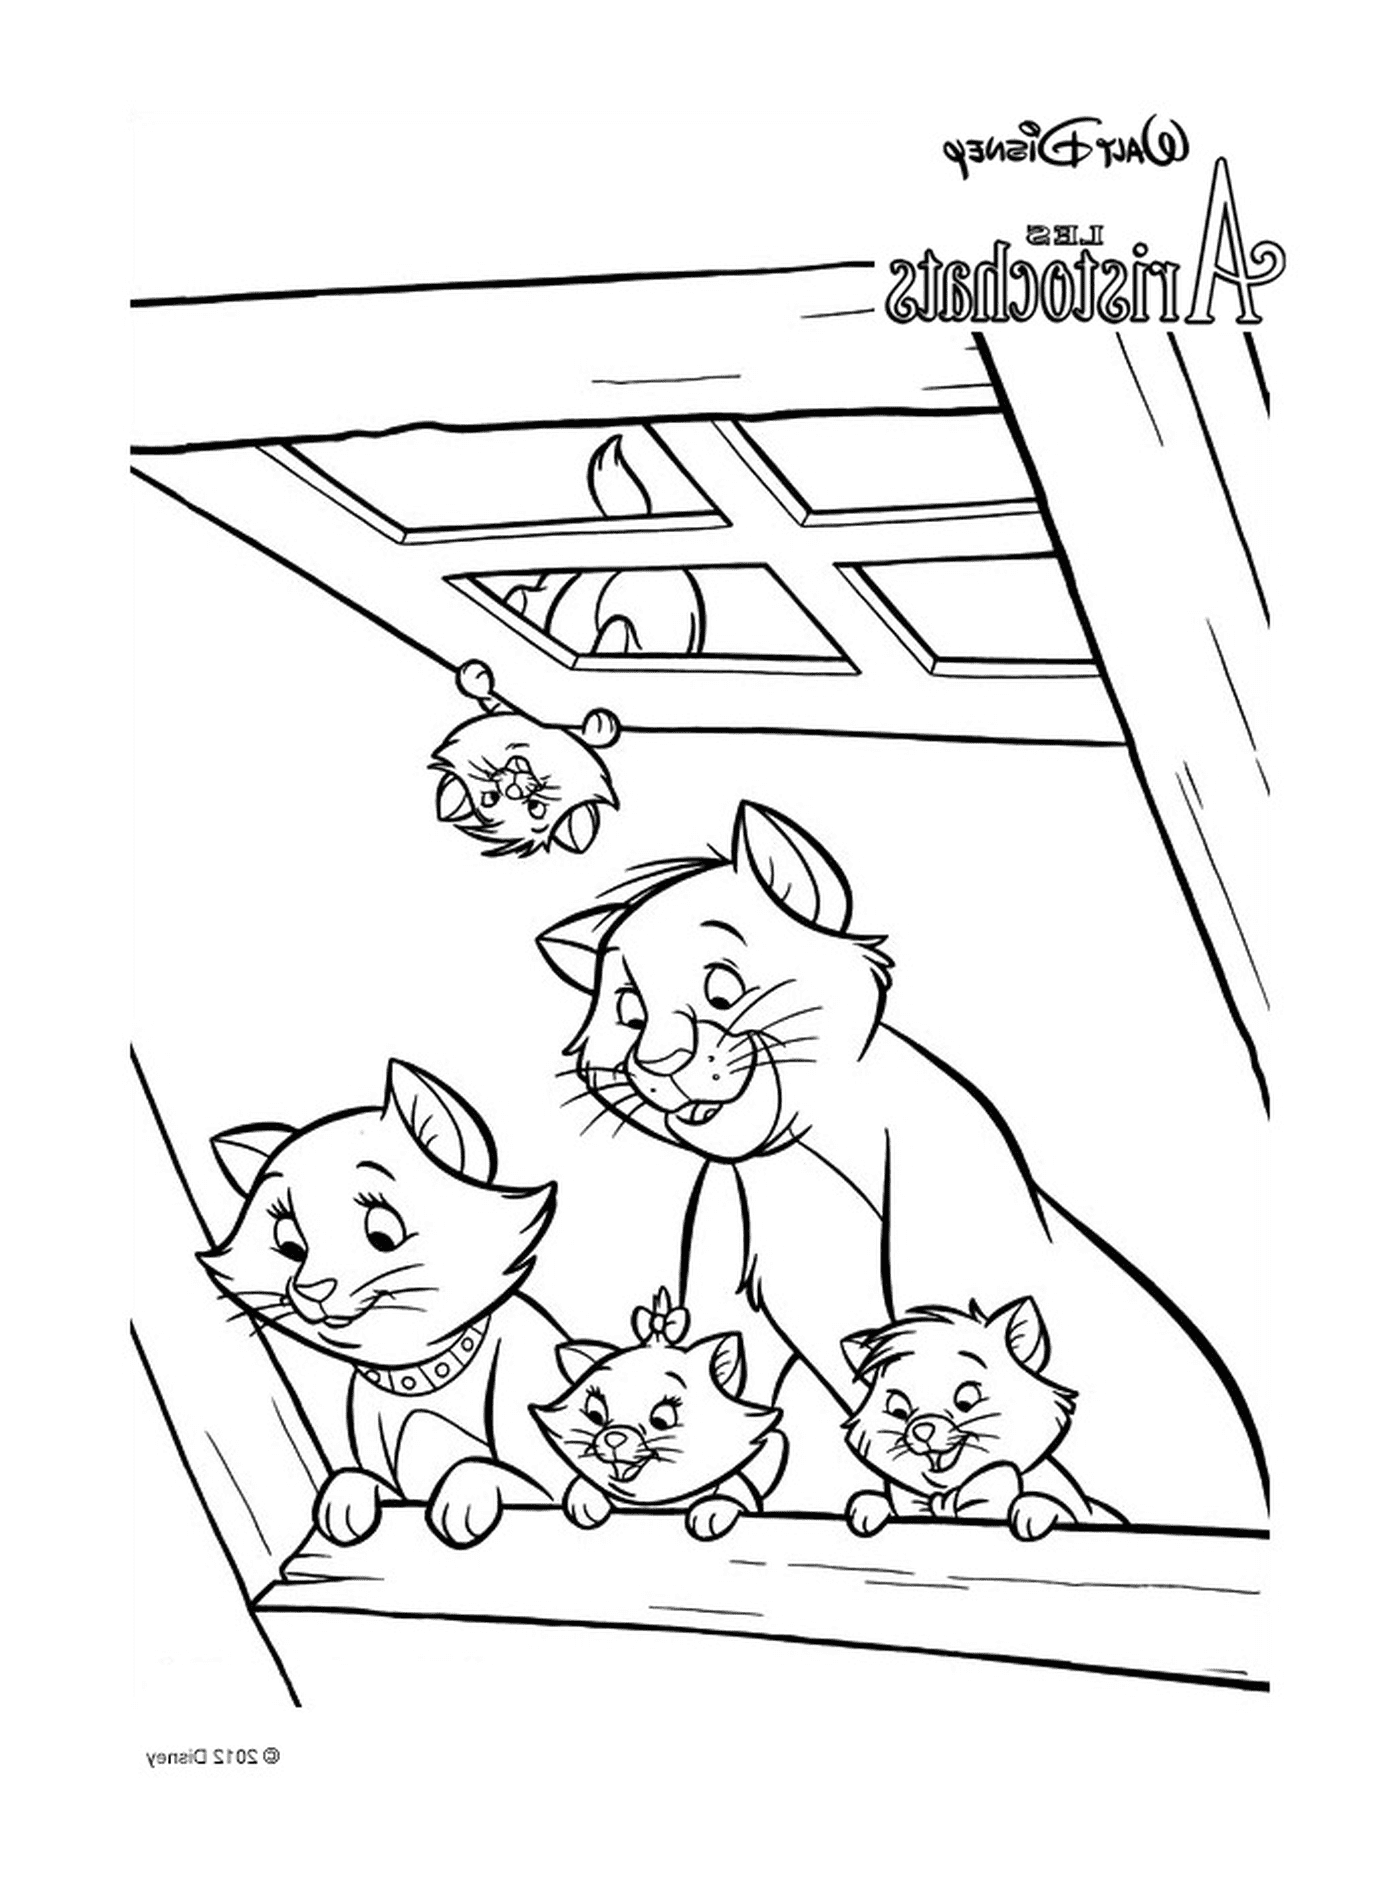  Un gruppo di gatti seduti sul tetto di un edificio 